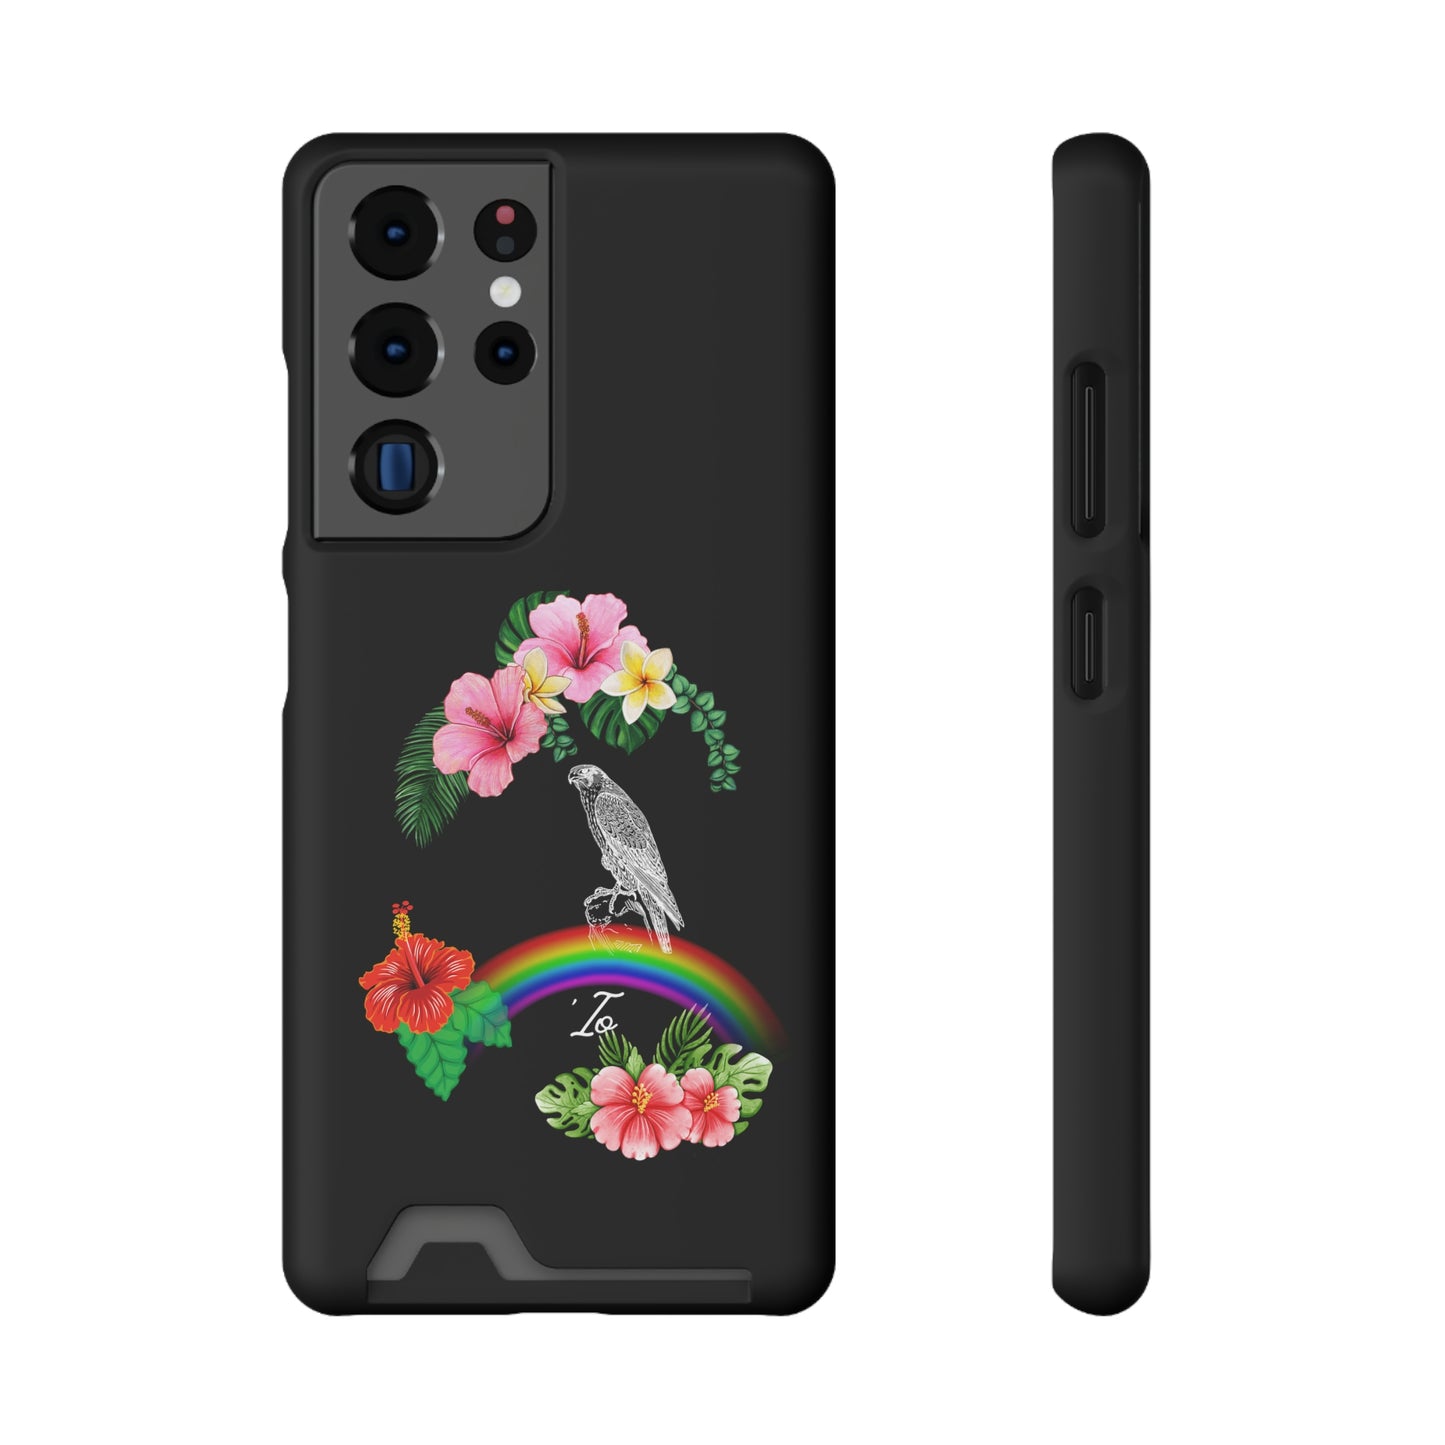 Io Hawaiian Hawk Phone Case With Card Holder